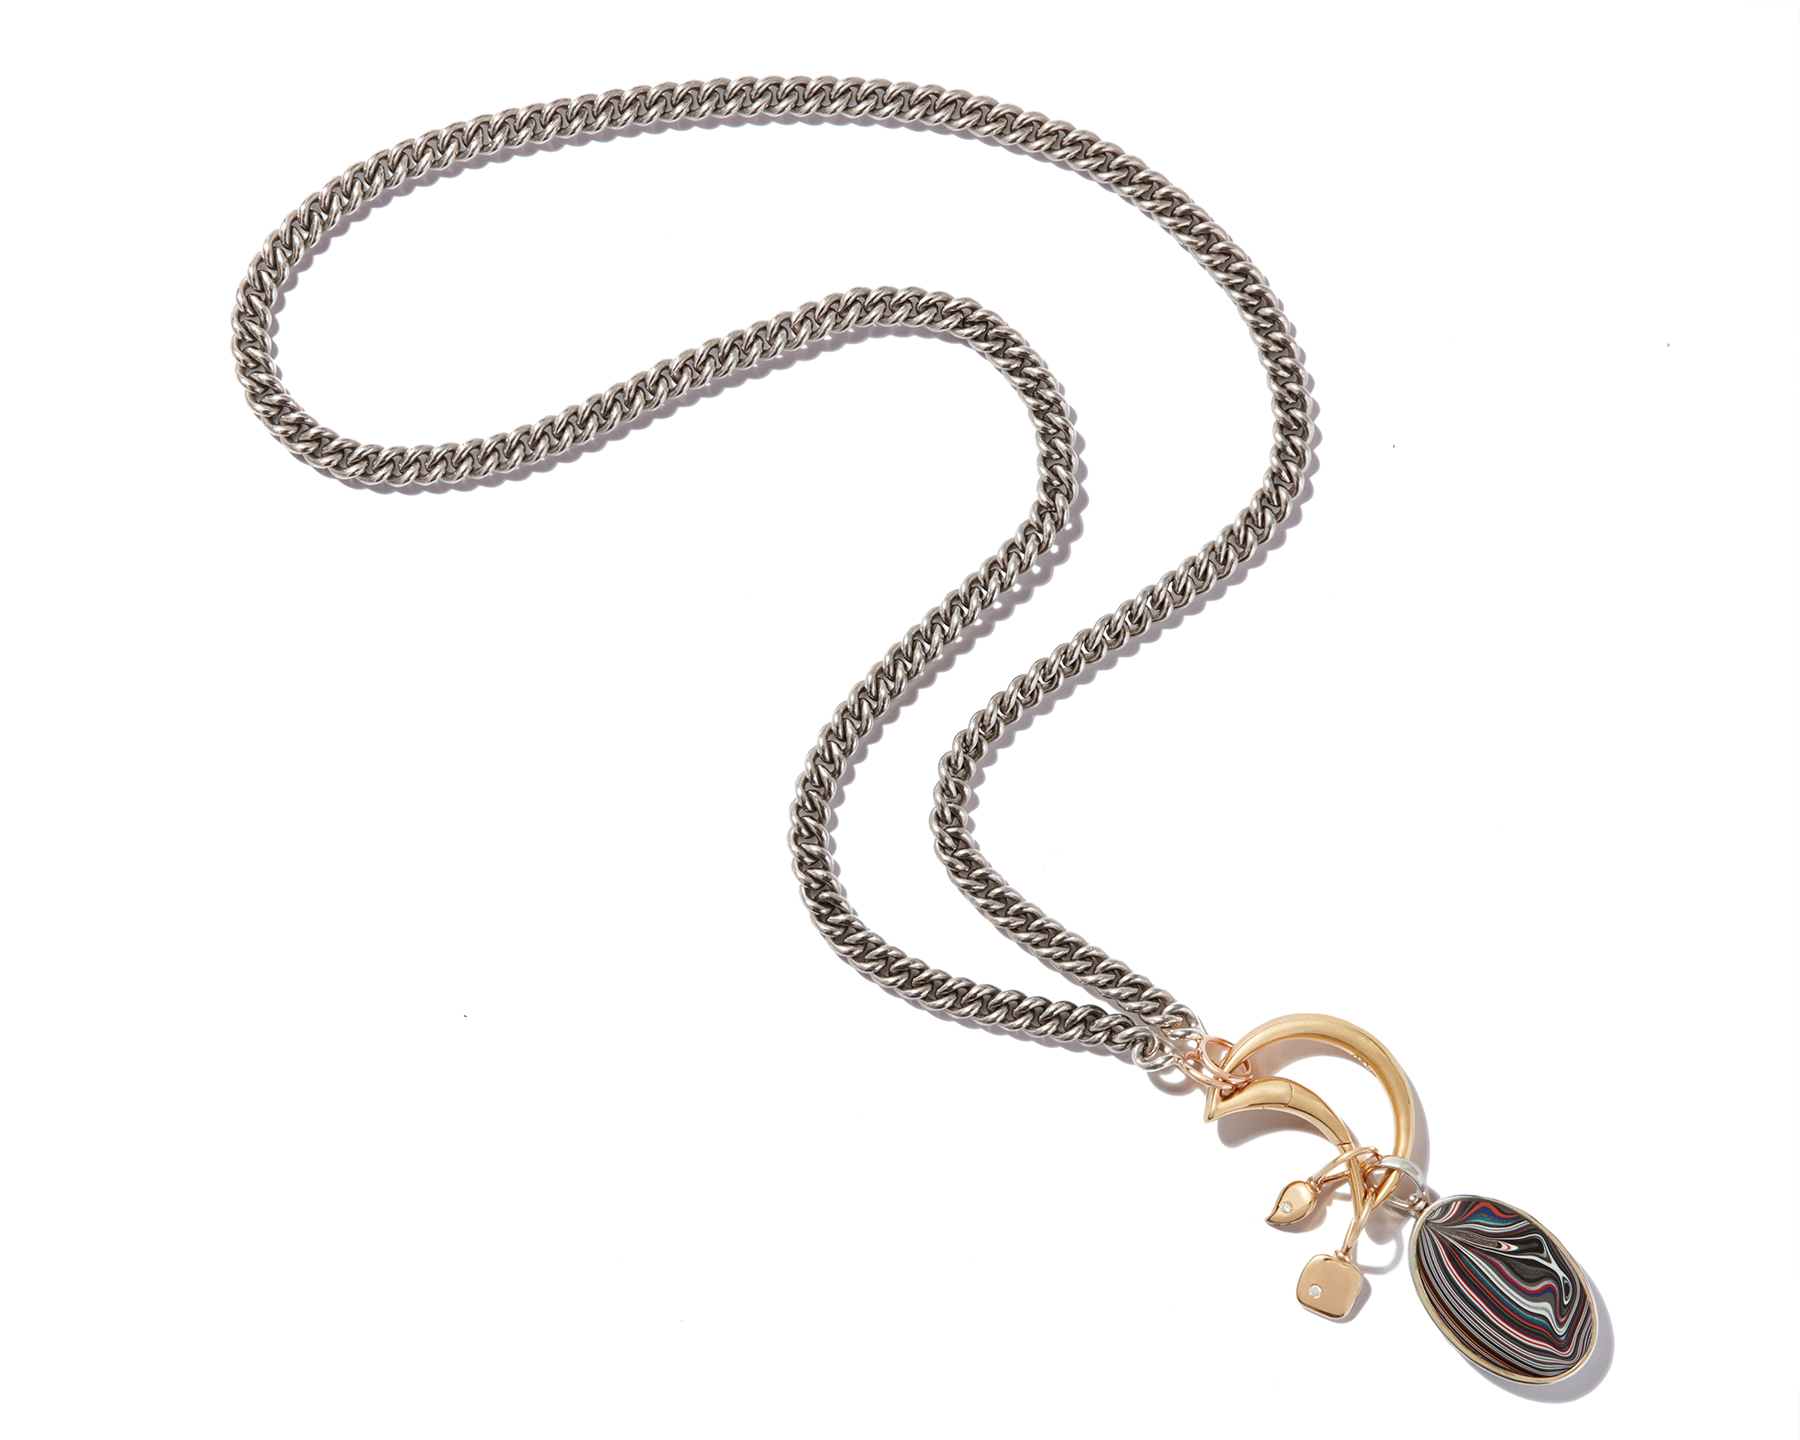 Sterling Silver Handmade Chain | Charles Albert Jewelry - Charles Albert Inc